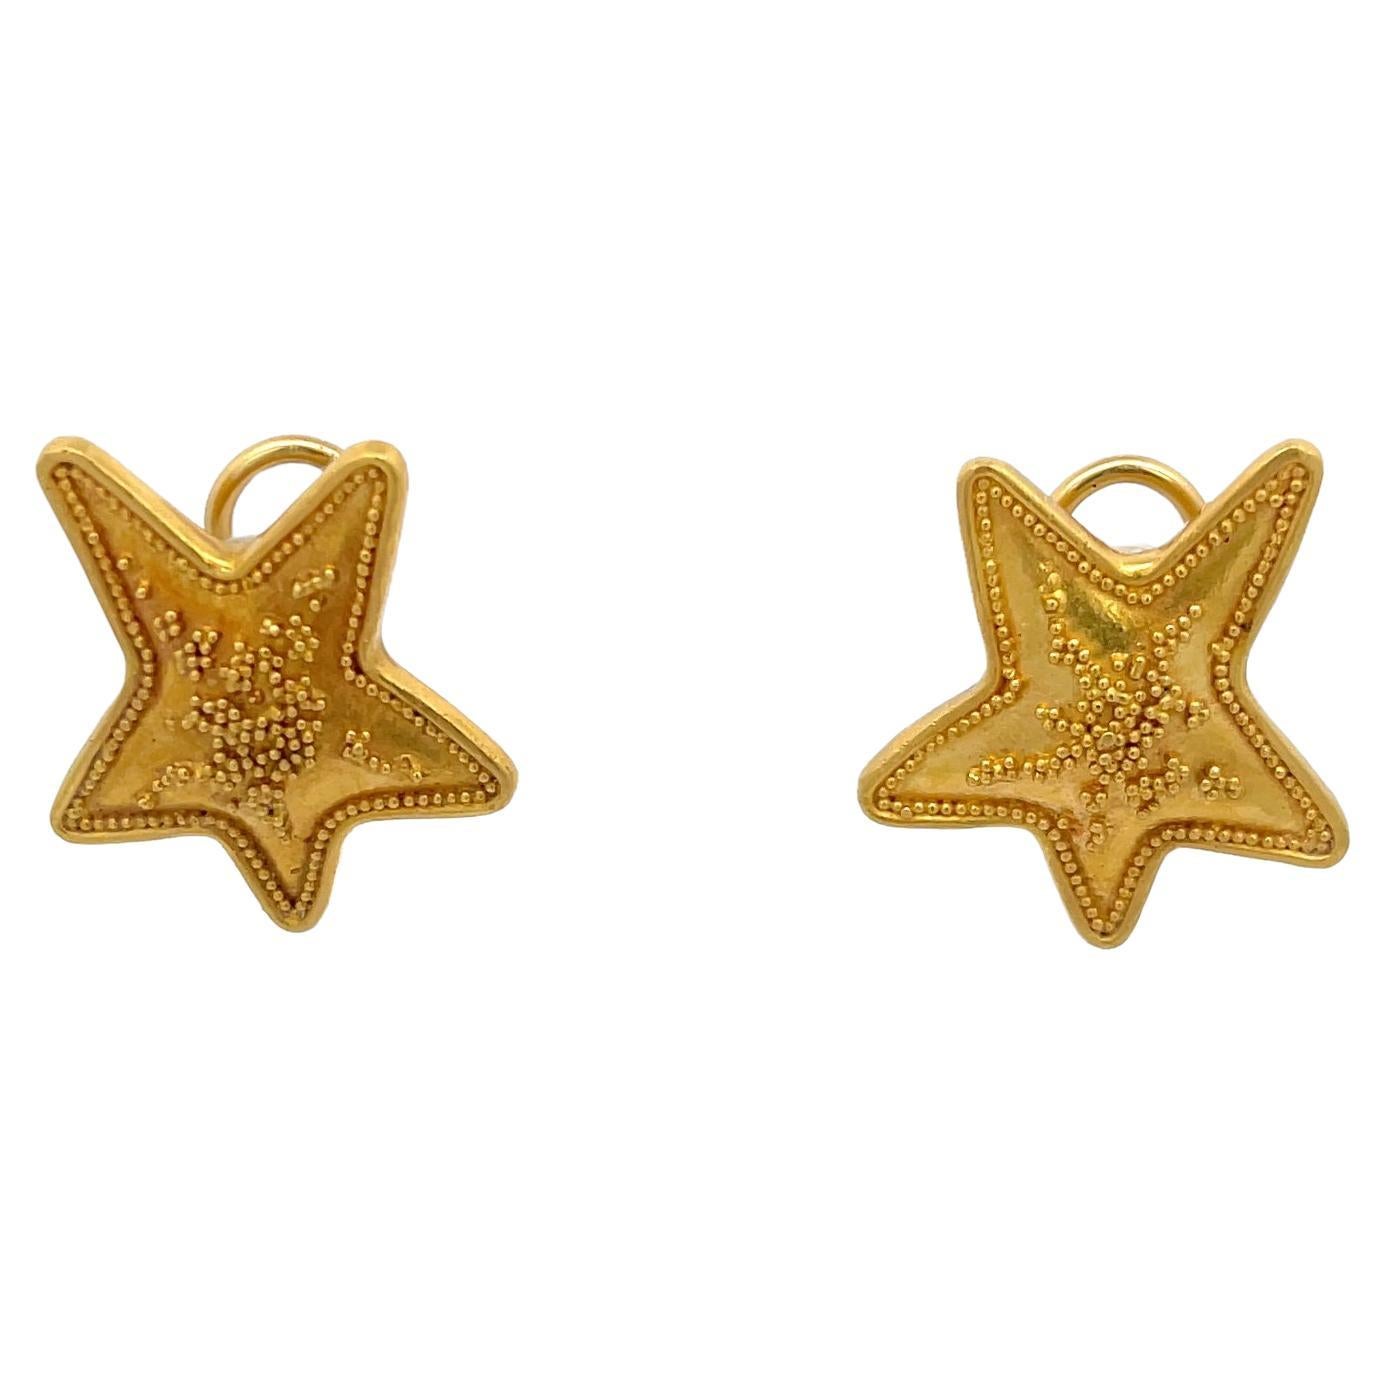 Star Earrings Handmade 22K Yellow Gold